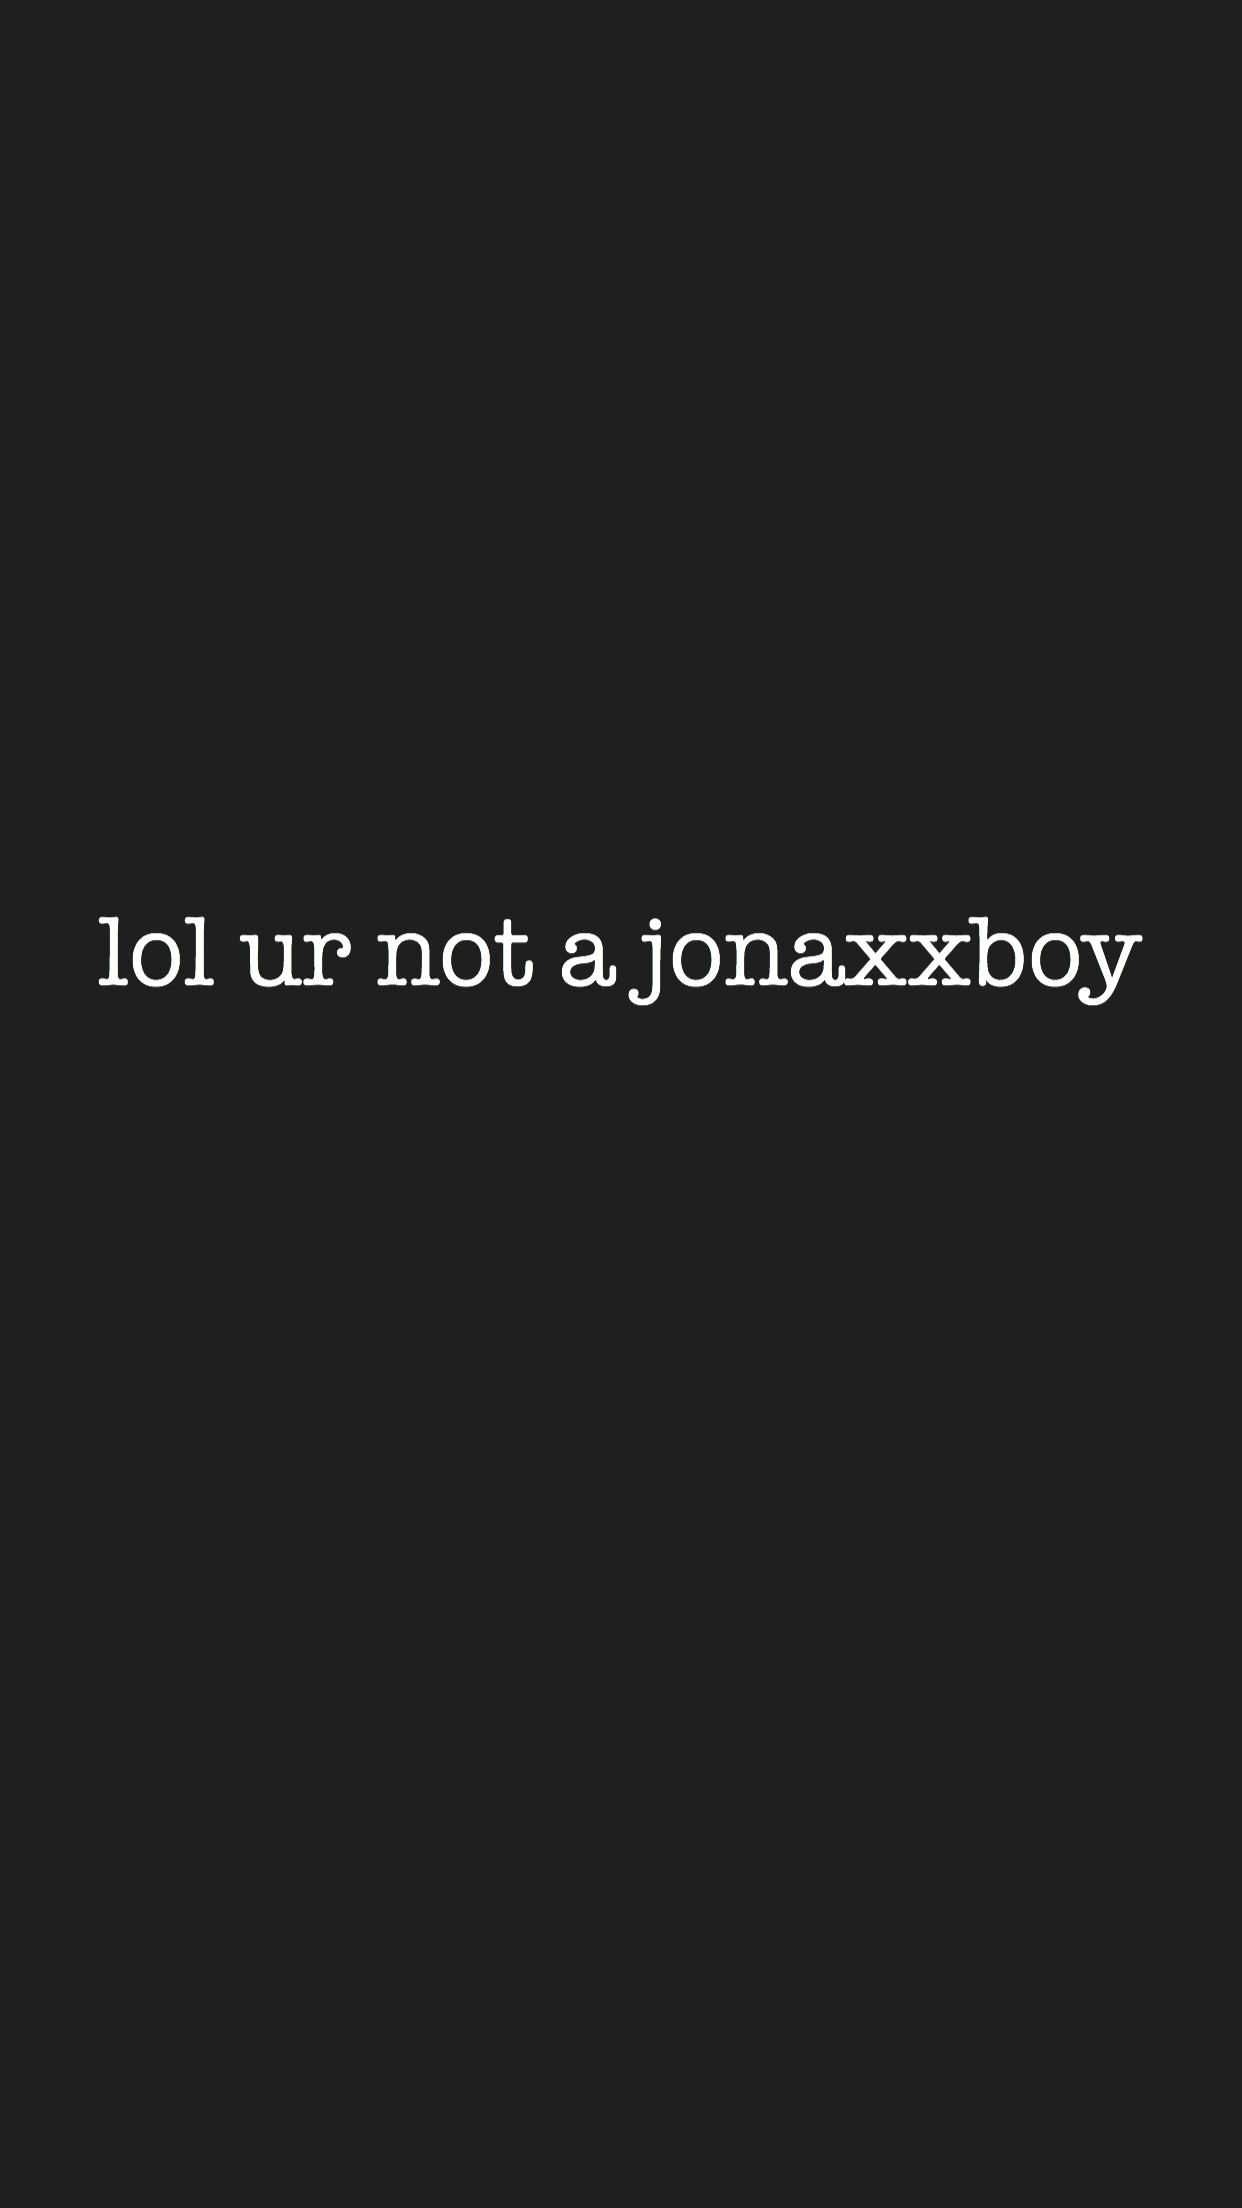 Lol ur not a jonaxxboy wallpaper wattpad jonaxxboy jonaxx jonaxx quotes jonaxx jonaxx boys